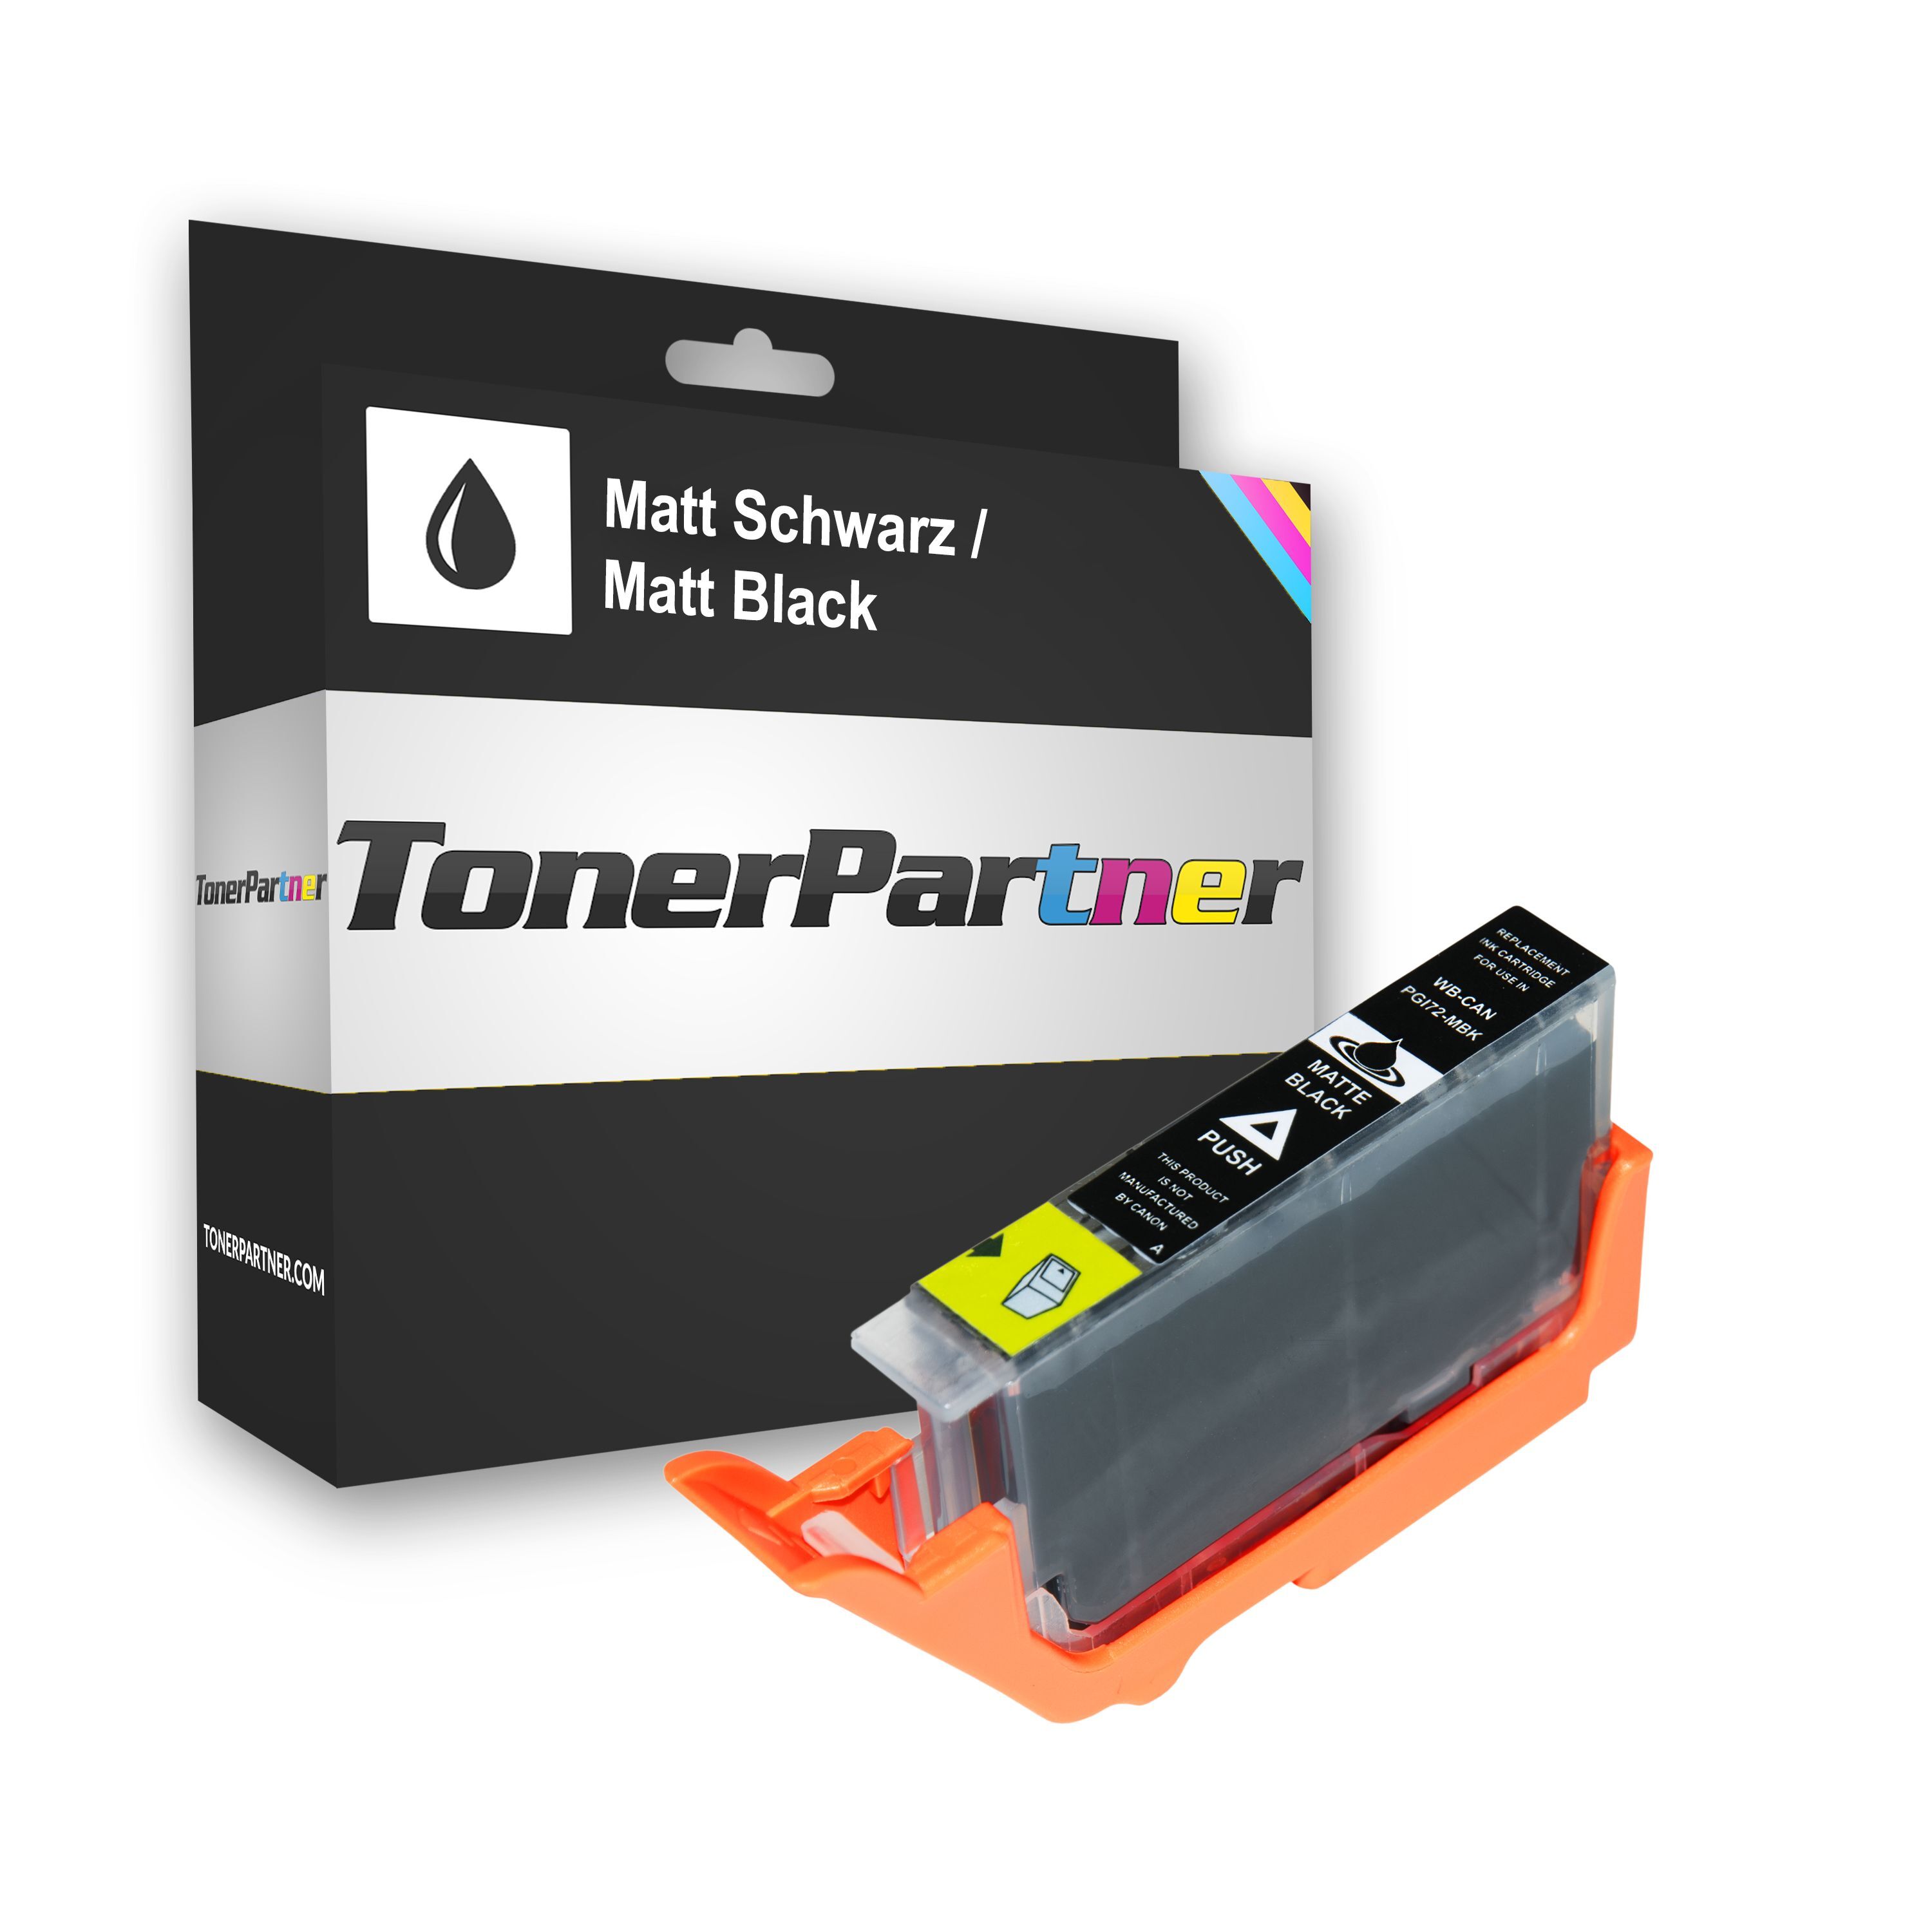 TonerPartner Kompatibel zu Canon Pixma Pro 10 Tintenpatrone (PGI-72 MBK / 6402 B 001) schwarz, 1.100 Seiten, 0,53 Rp pro Seite, Inhalt: 13 ml von TonerPartner